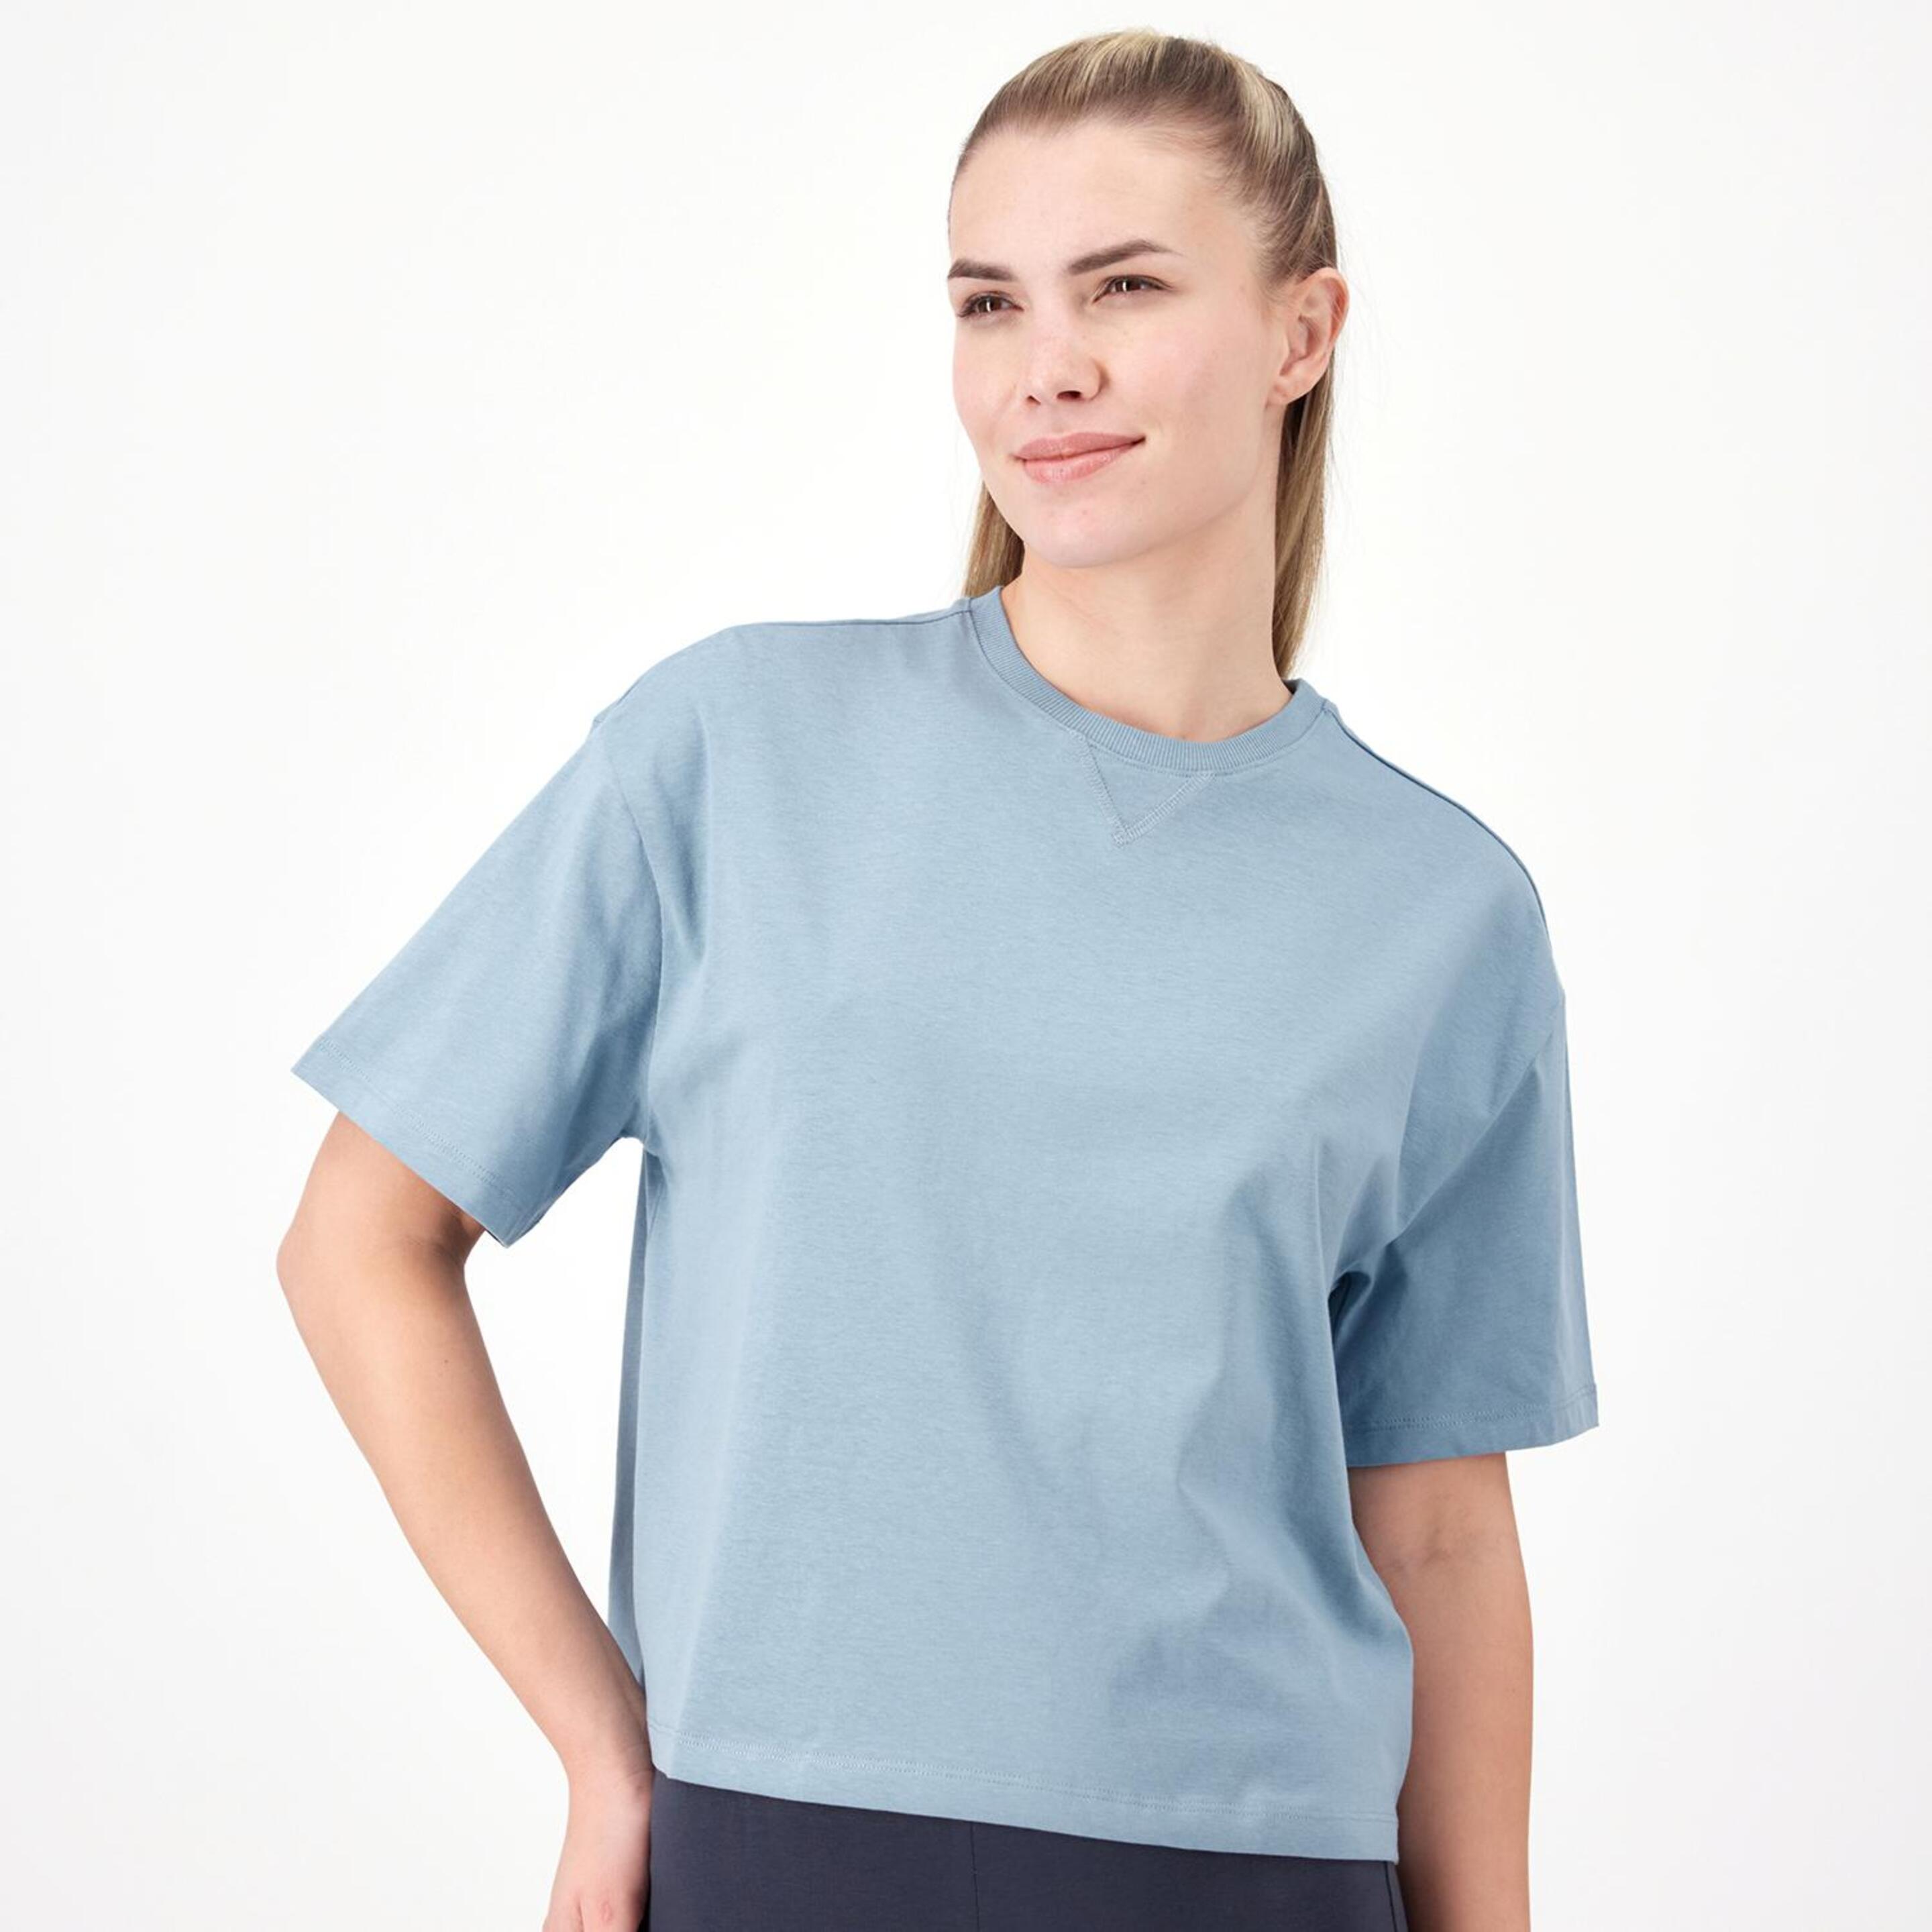 Camiseta Up - azul - Camiseta Boxy Mujer